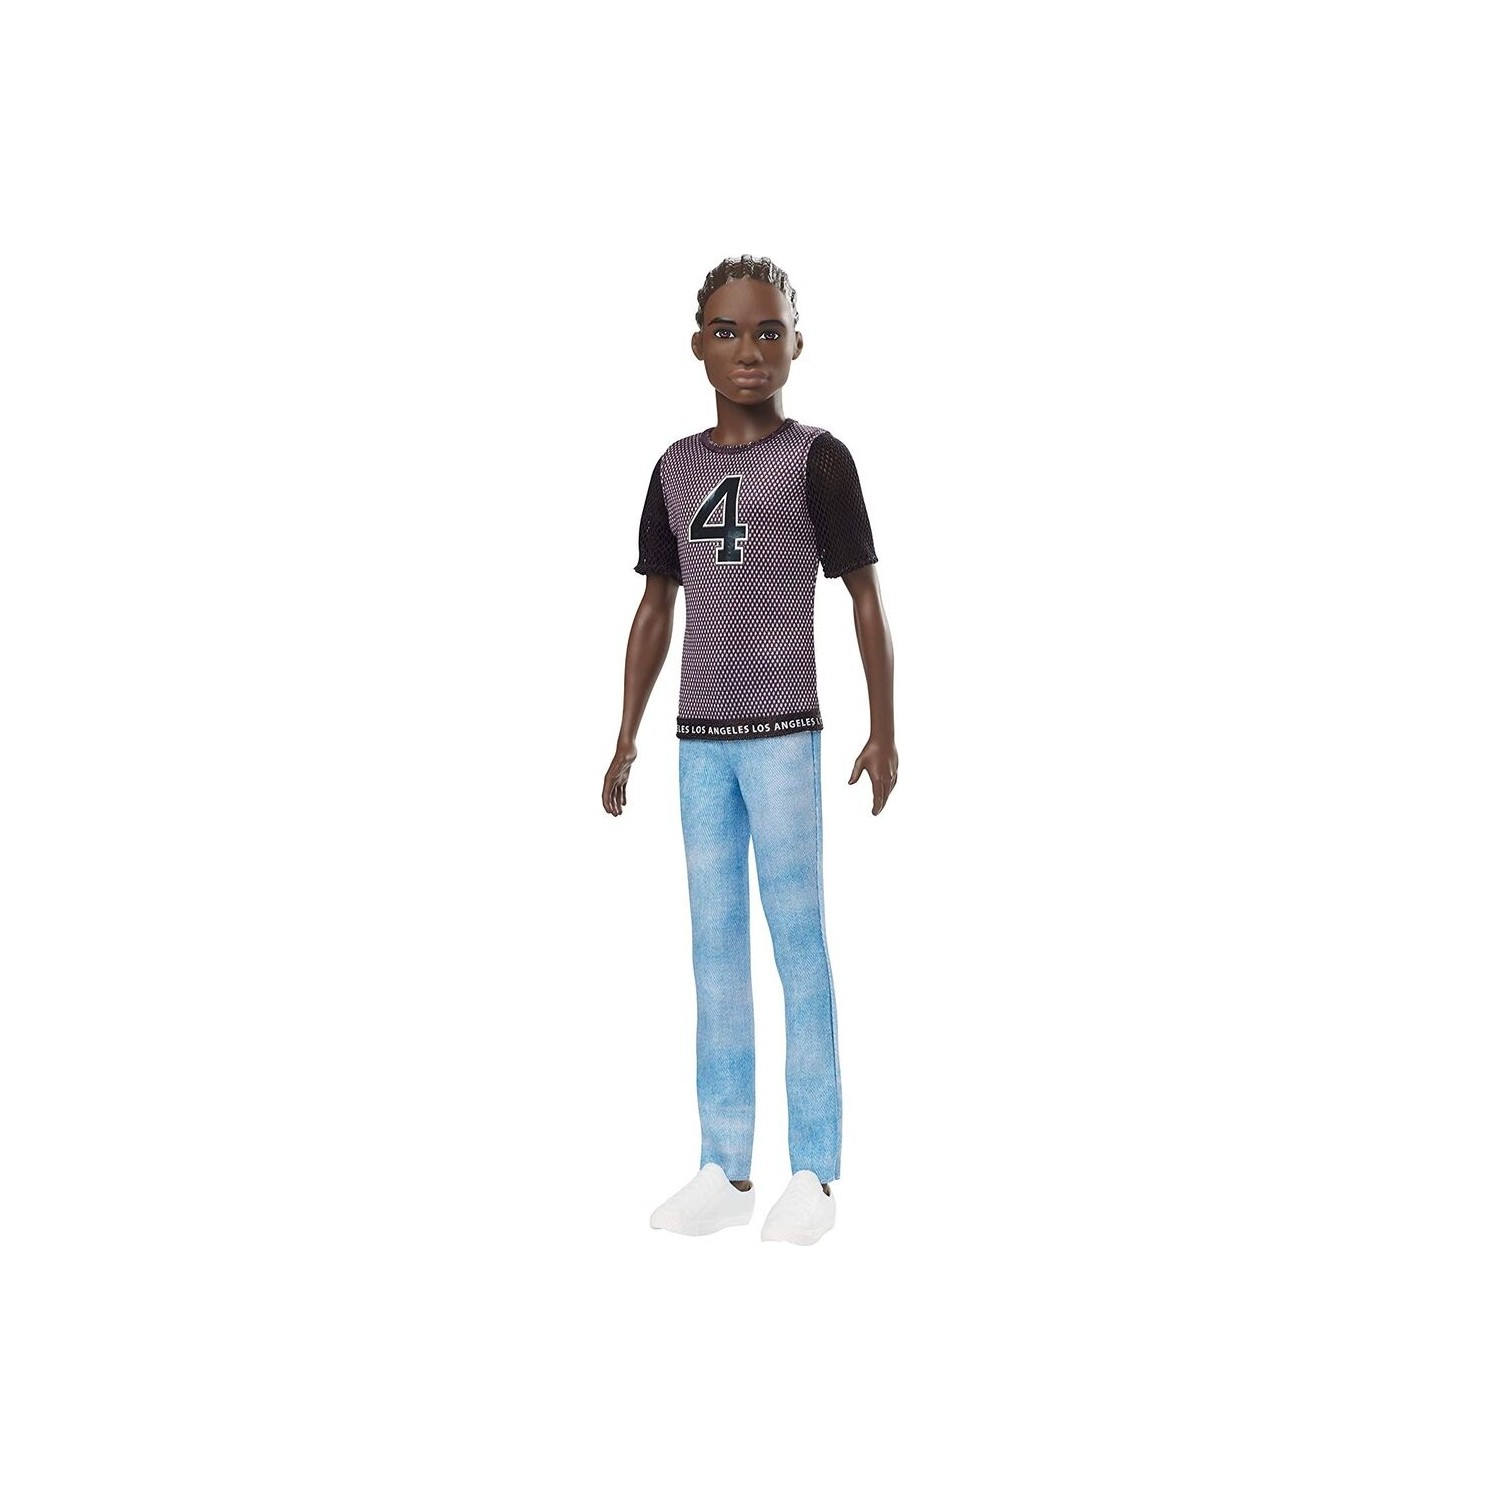 Кукла Barbie Кен DWK44-GDV13 кукла barbie кен gdv14 dwk44